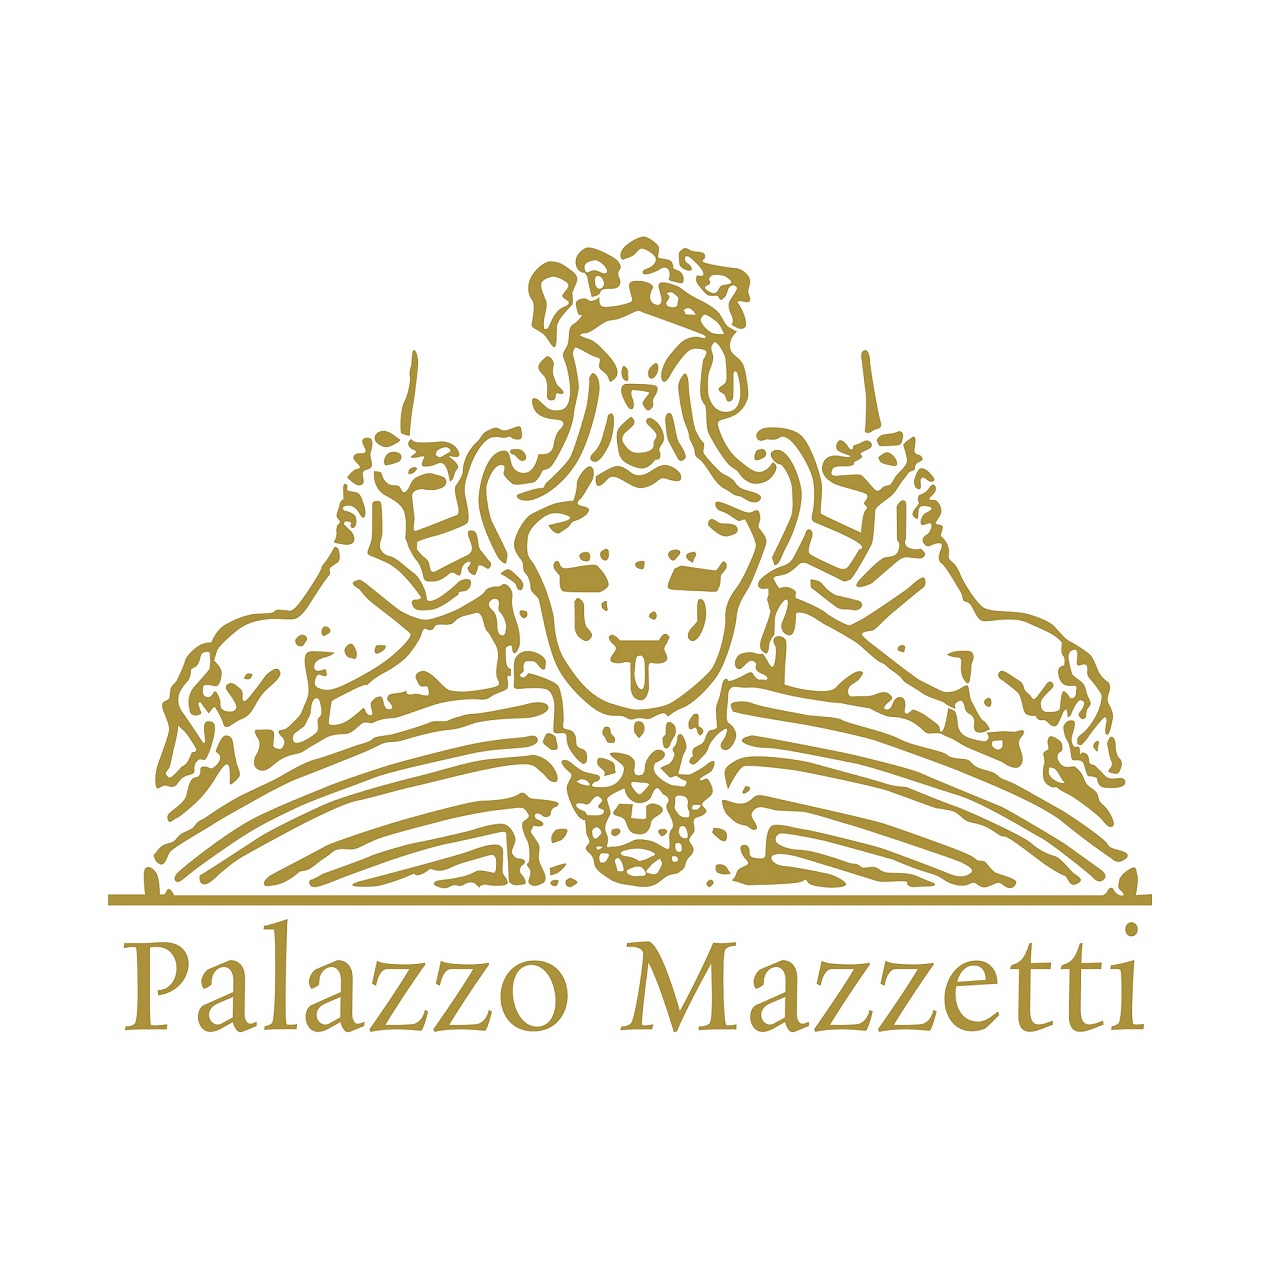 Fondazione Palazzo Mazzetti